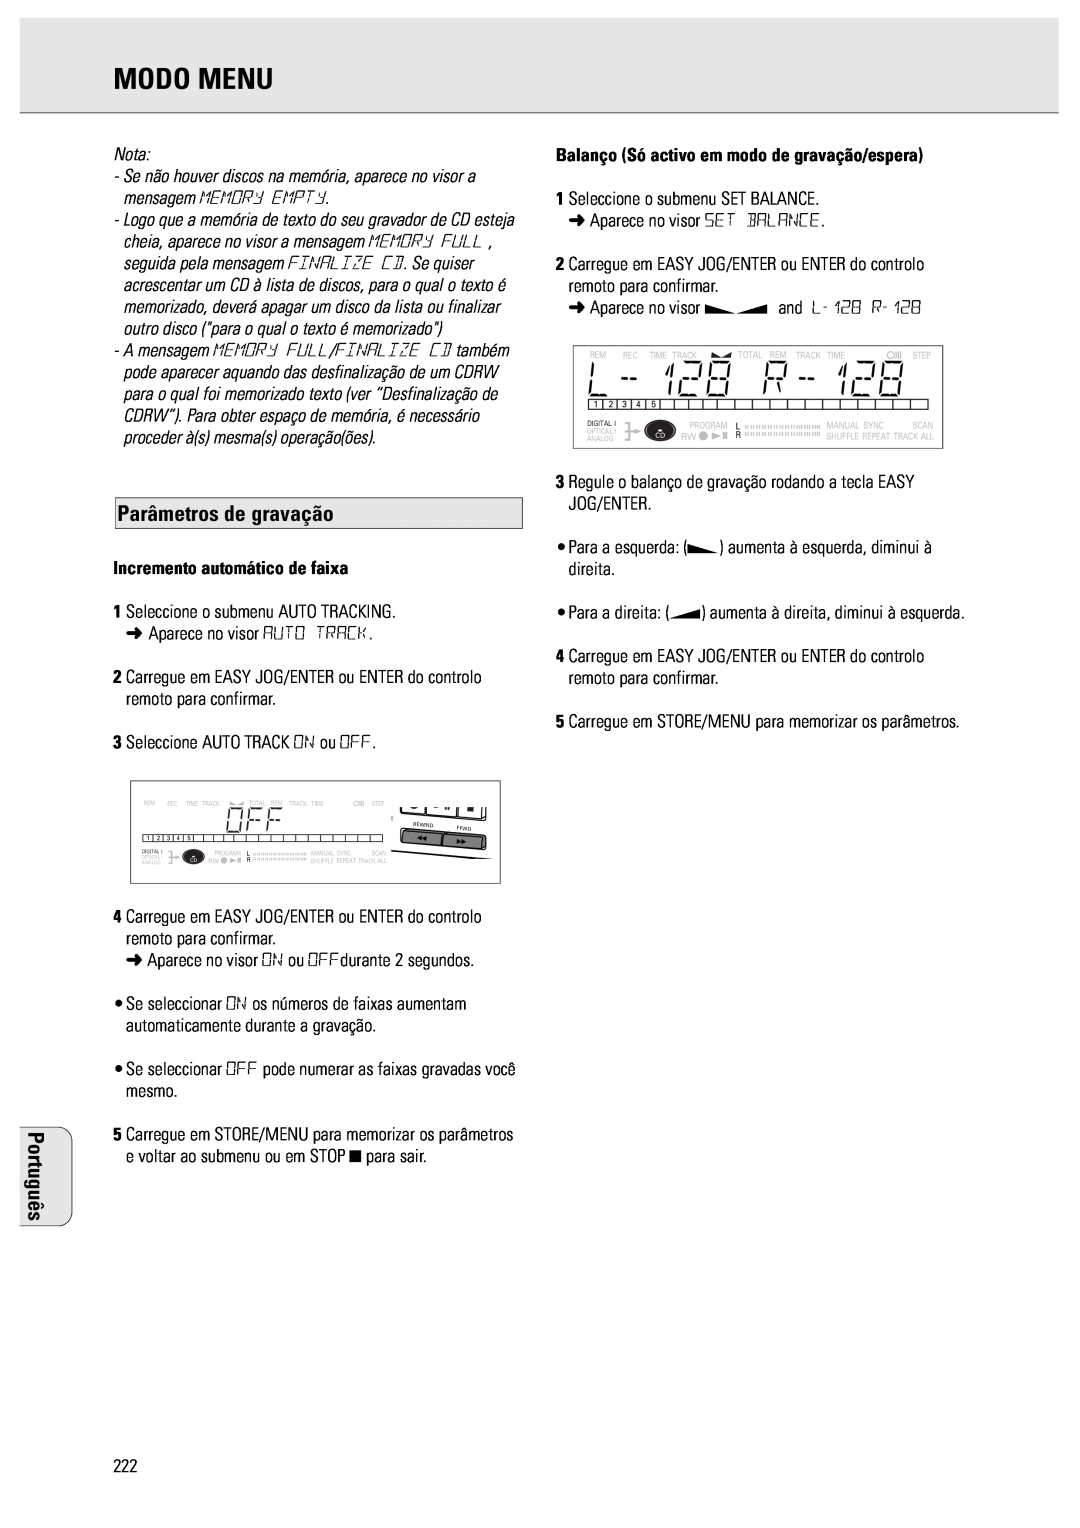 Philips CDR570 manual Parâmetros de gravação, Modo Menu, Português, Nota, Incremento automático de faixa 